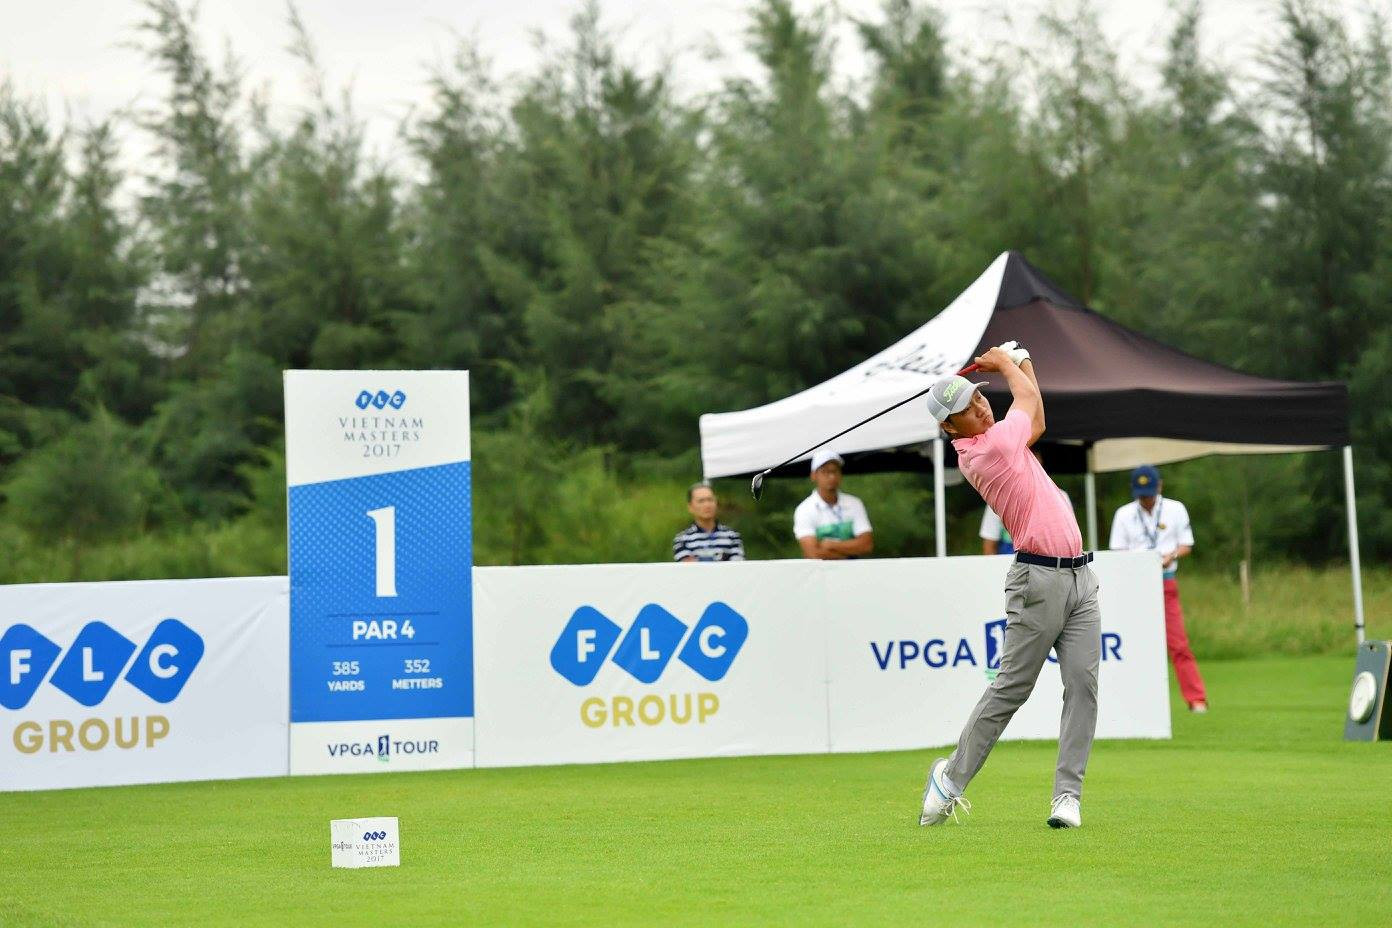 VPGA Tour: Nguồn cảm hứng của những người yêu golf Việt - Ảnh 1.